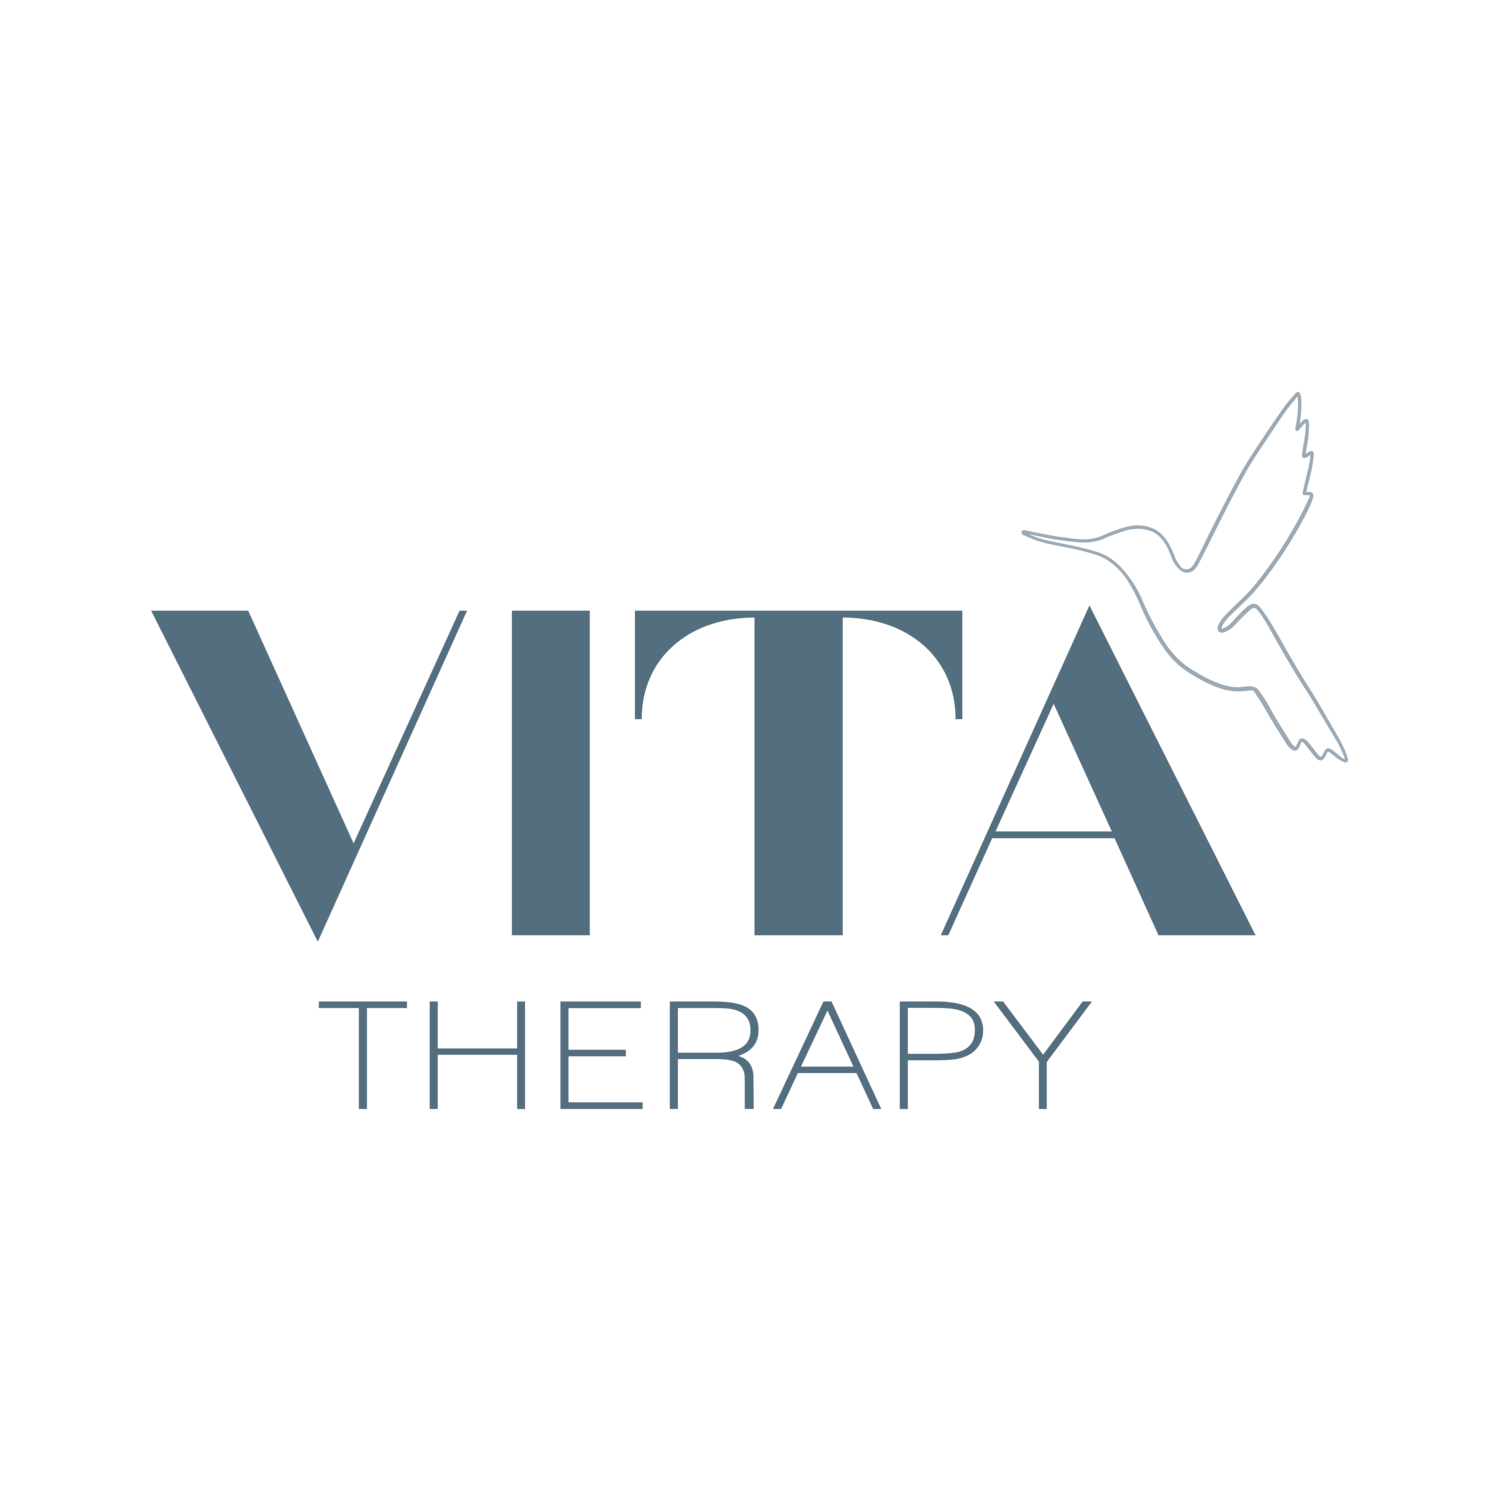 Vita Therapy